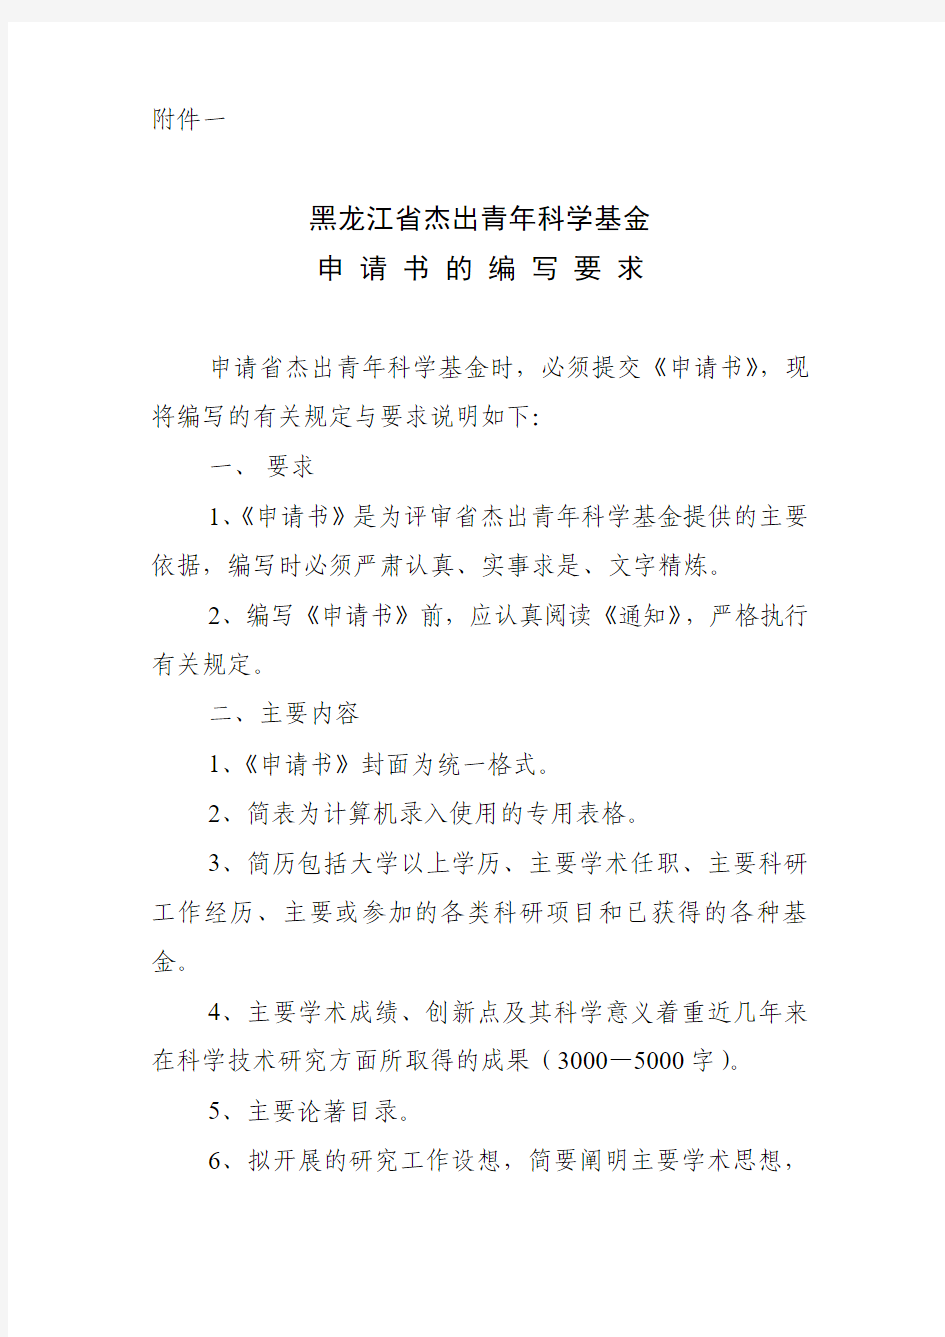 黑龙江省杰出青年科学基金申请书的编写要求